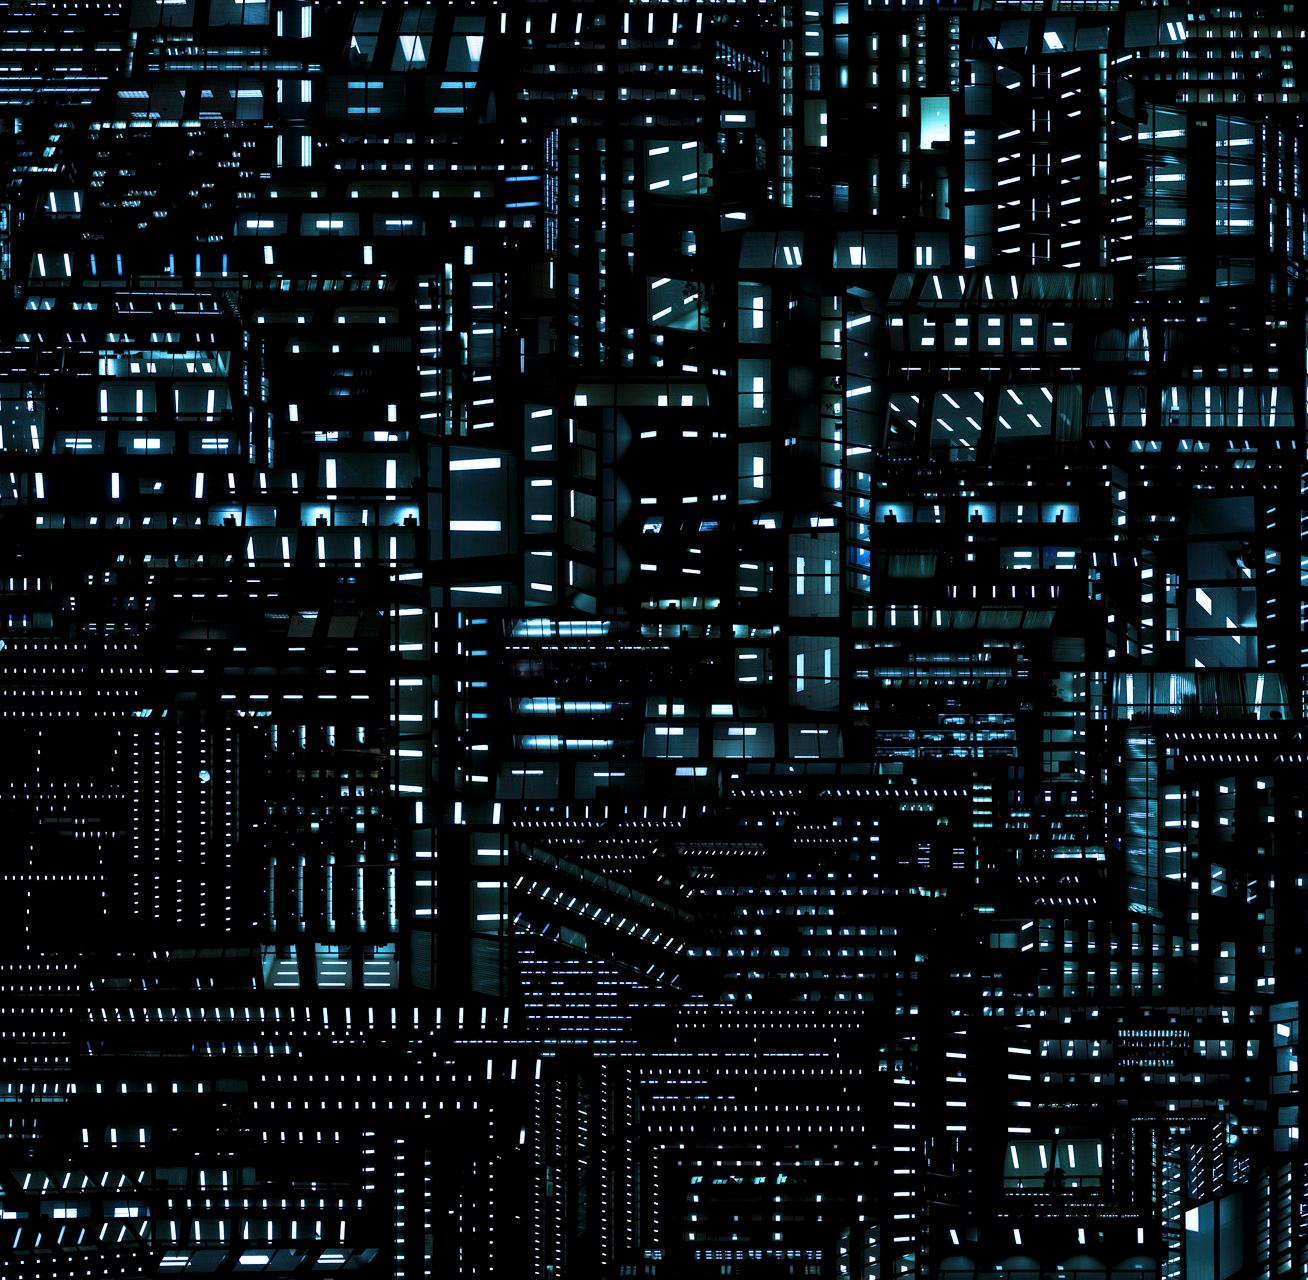 Urban Codes - Zeitgenössische abstrakte architektonische Stadtfotografie bei Nacht
Lichtdiagramm 01
Auflage 2/3 + 1 AP
C-Print ist ungerahmt und wird mit einem signierten Aufkleber versandt.

Die künstlerischen Arbeiten von Hubert Blanz befassen